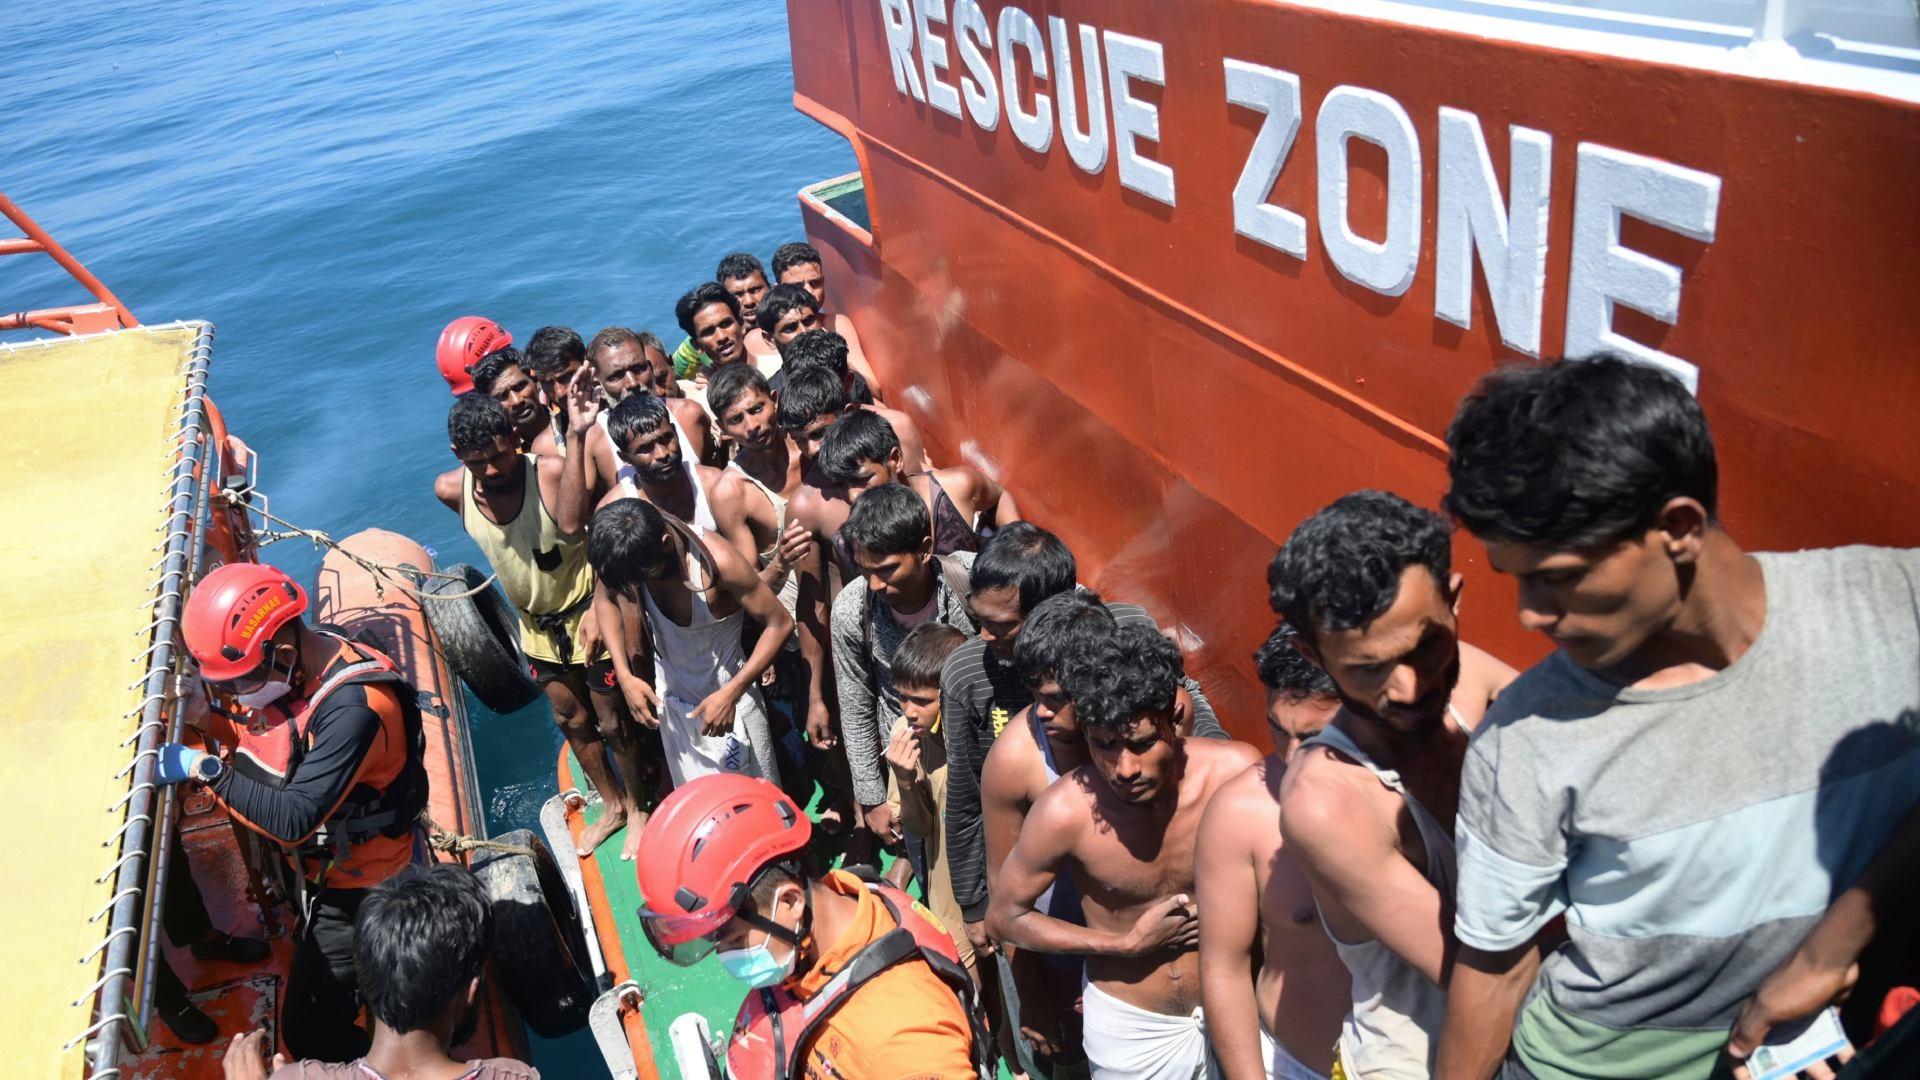 Fotos | Indonesia Localiza Barco que Naufragó con Decenas de Rohinyas; Inicia Rescate